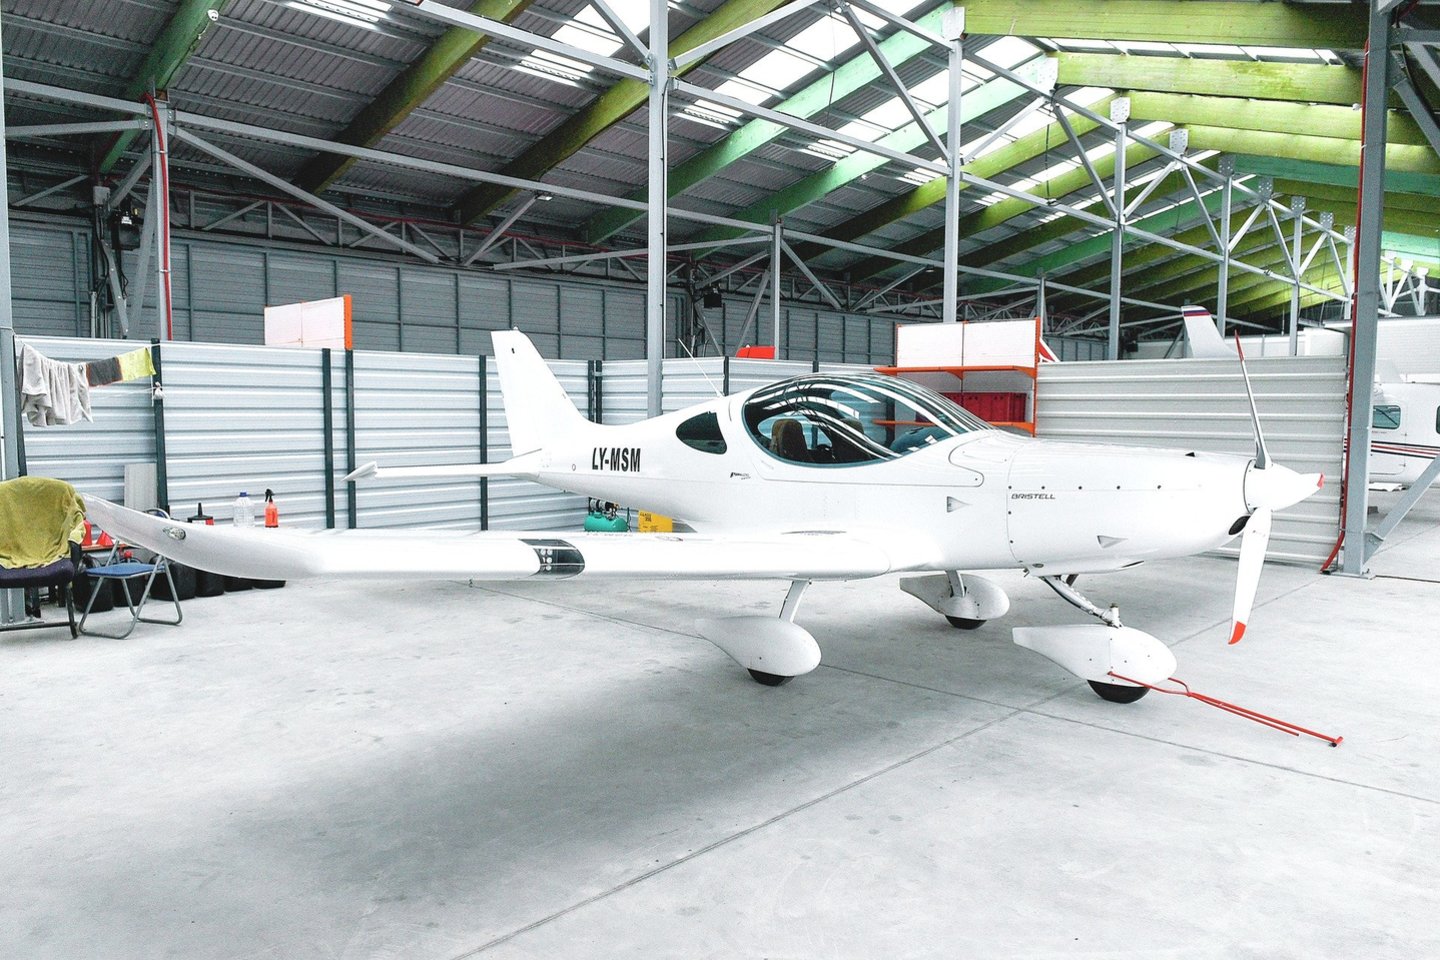 Radžiūnų aviacijos bazės angaruose saugomi ir kitų asmenų privatūs ultralengvieji lėktuvai.